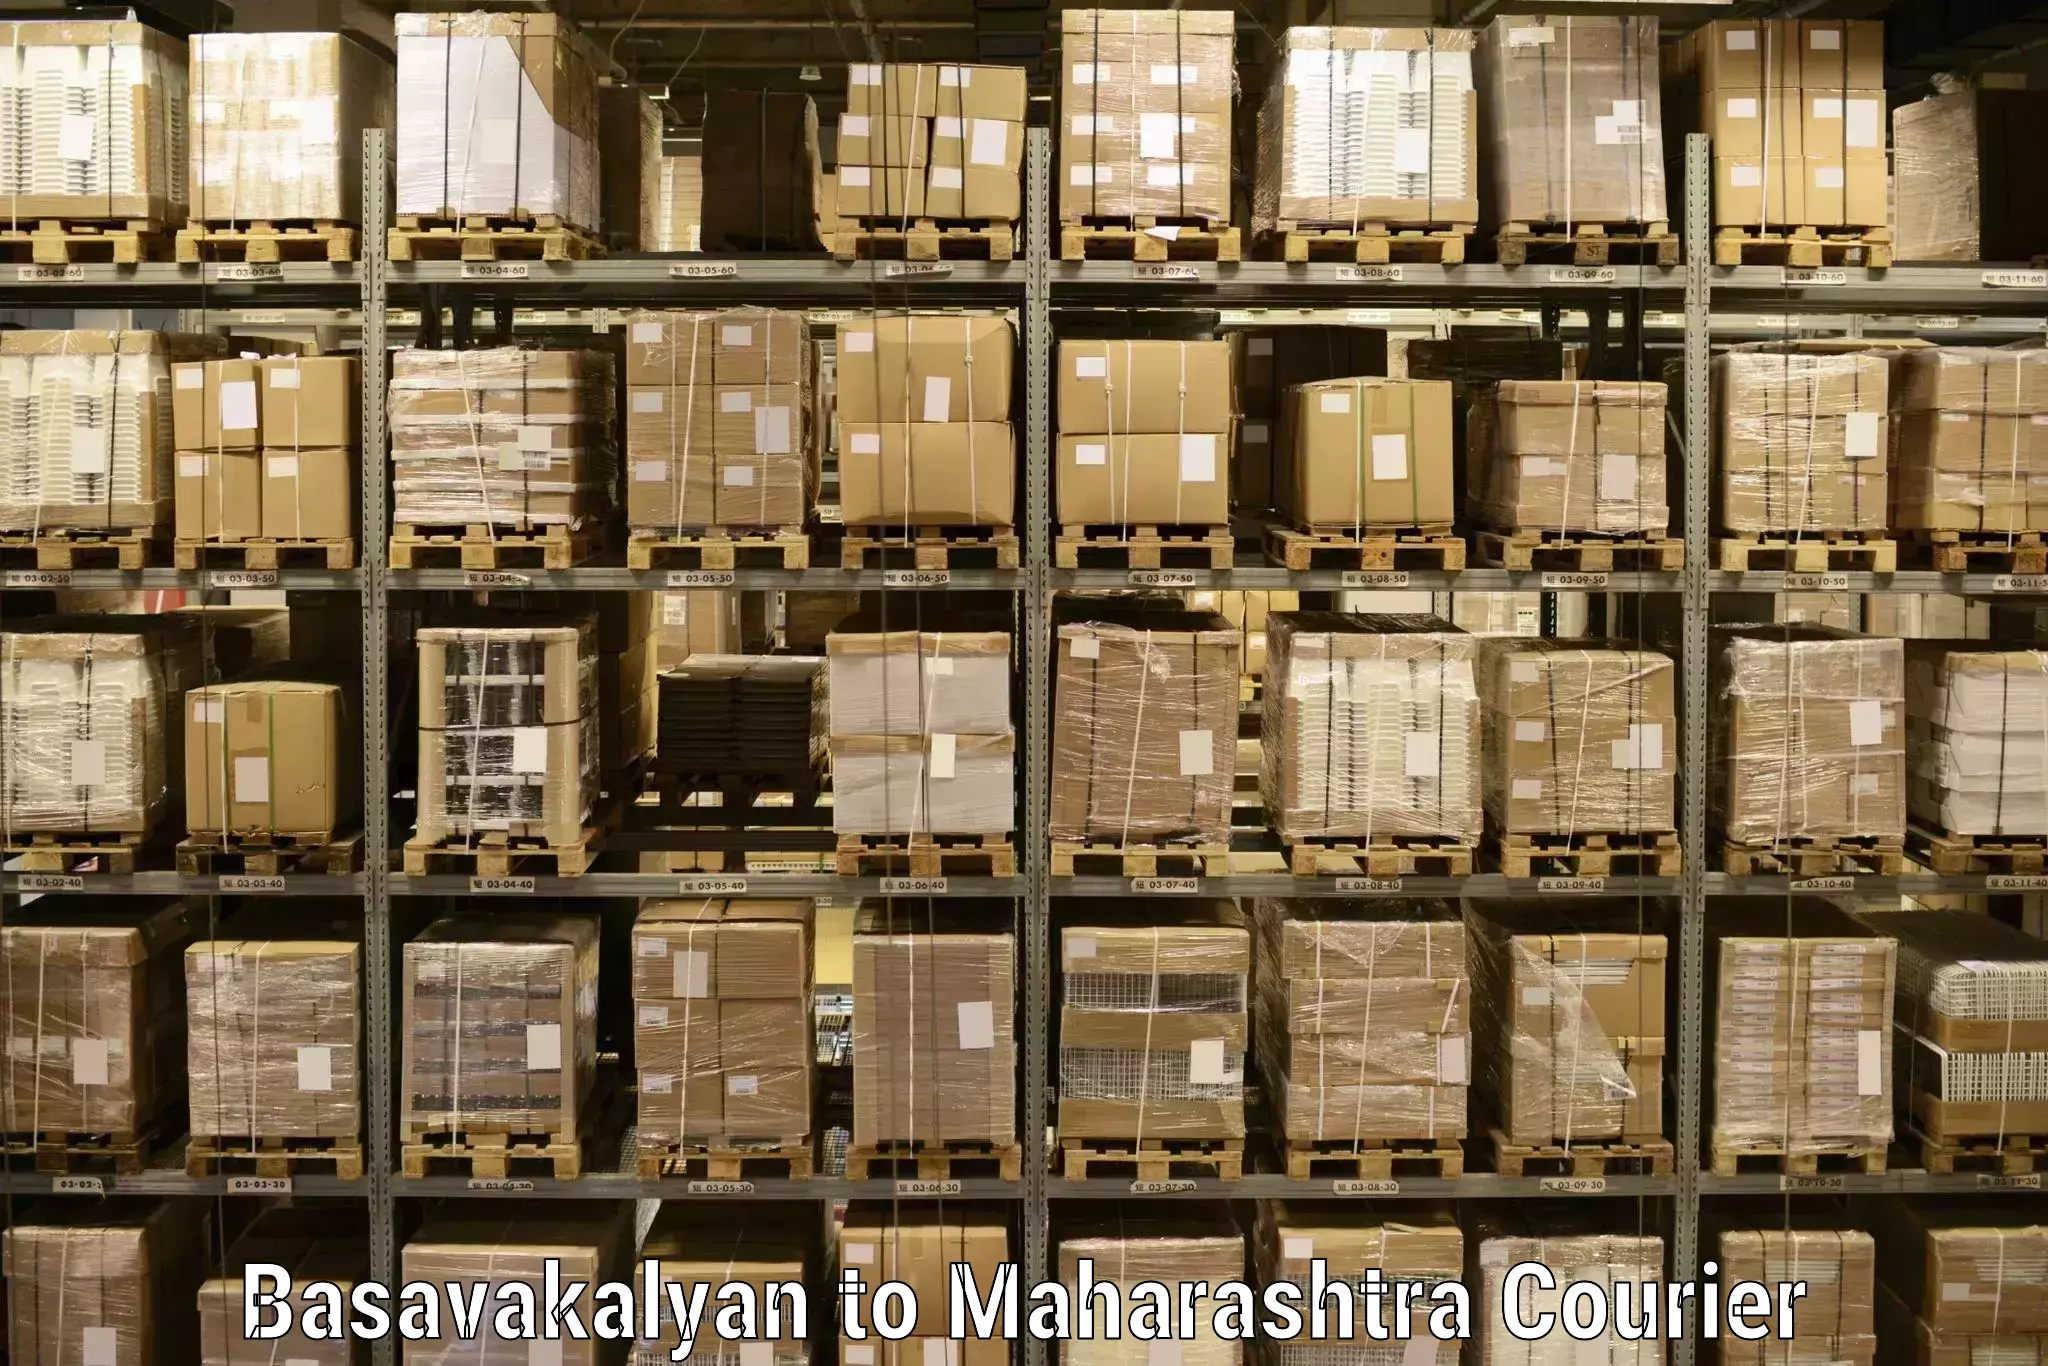 Tech-enabled shipping Basavakalyan to Ghatanji